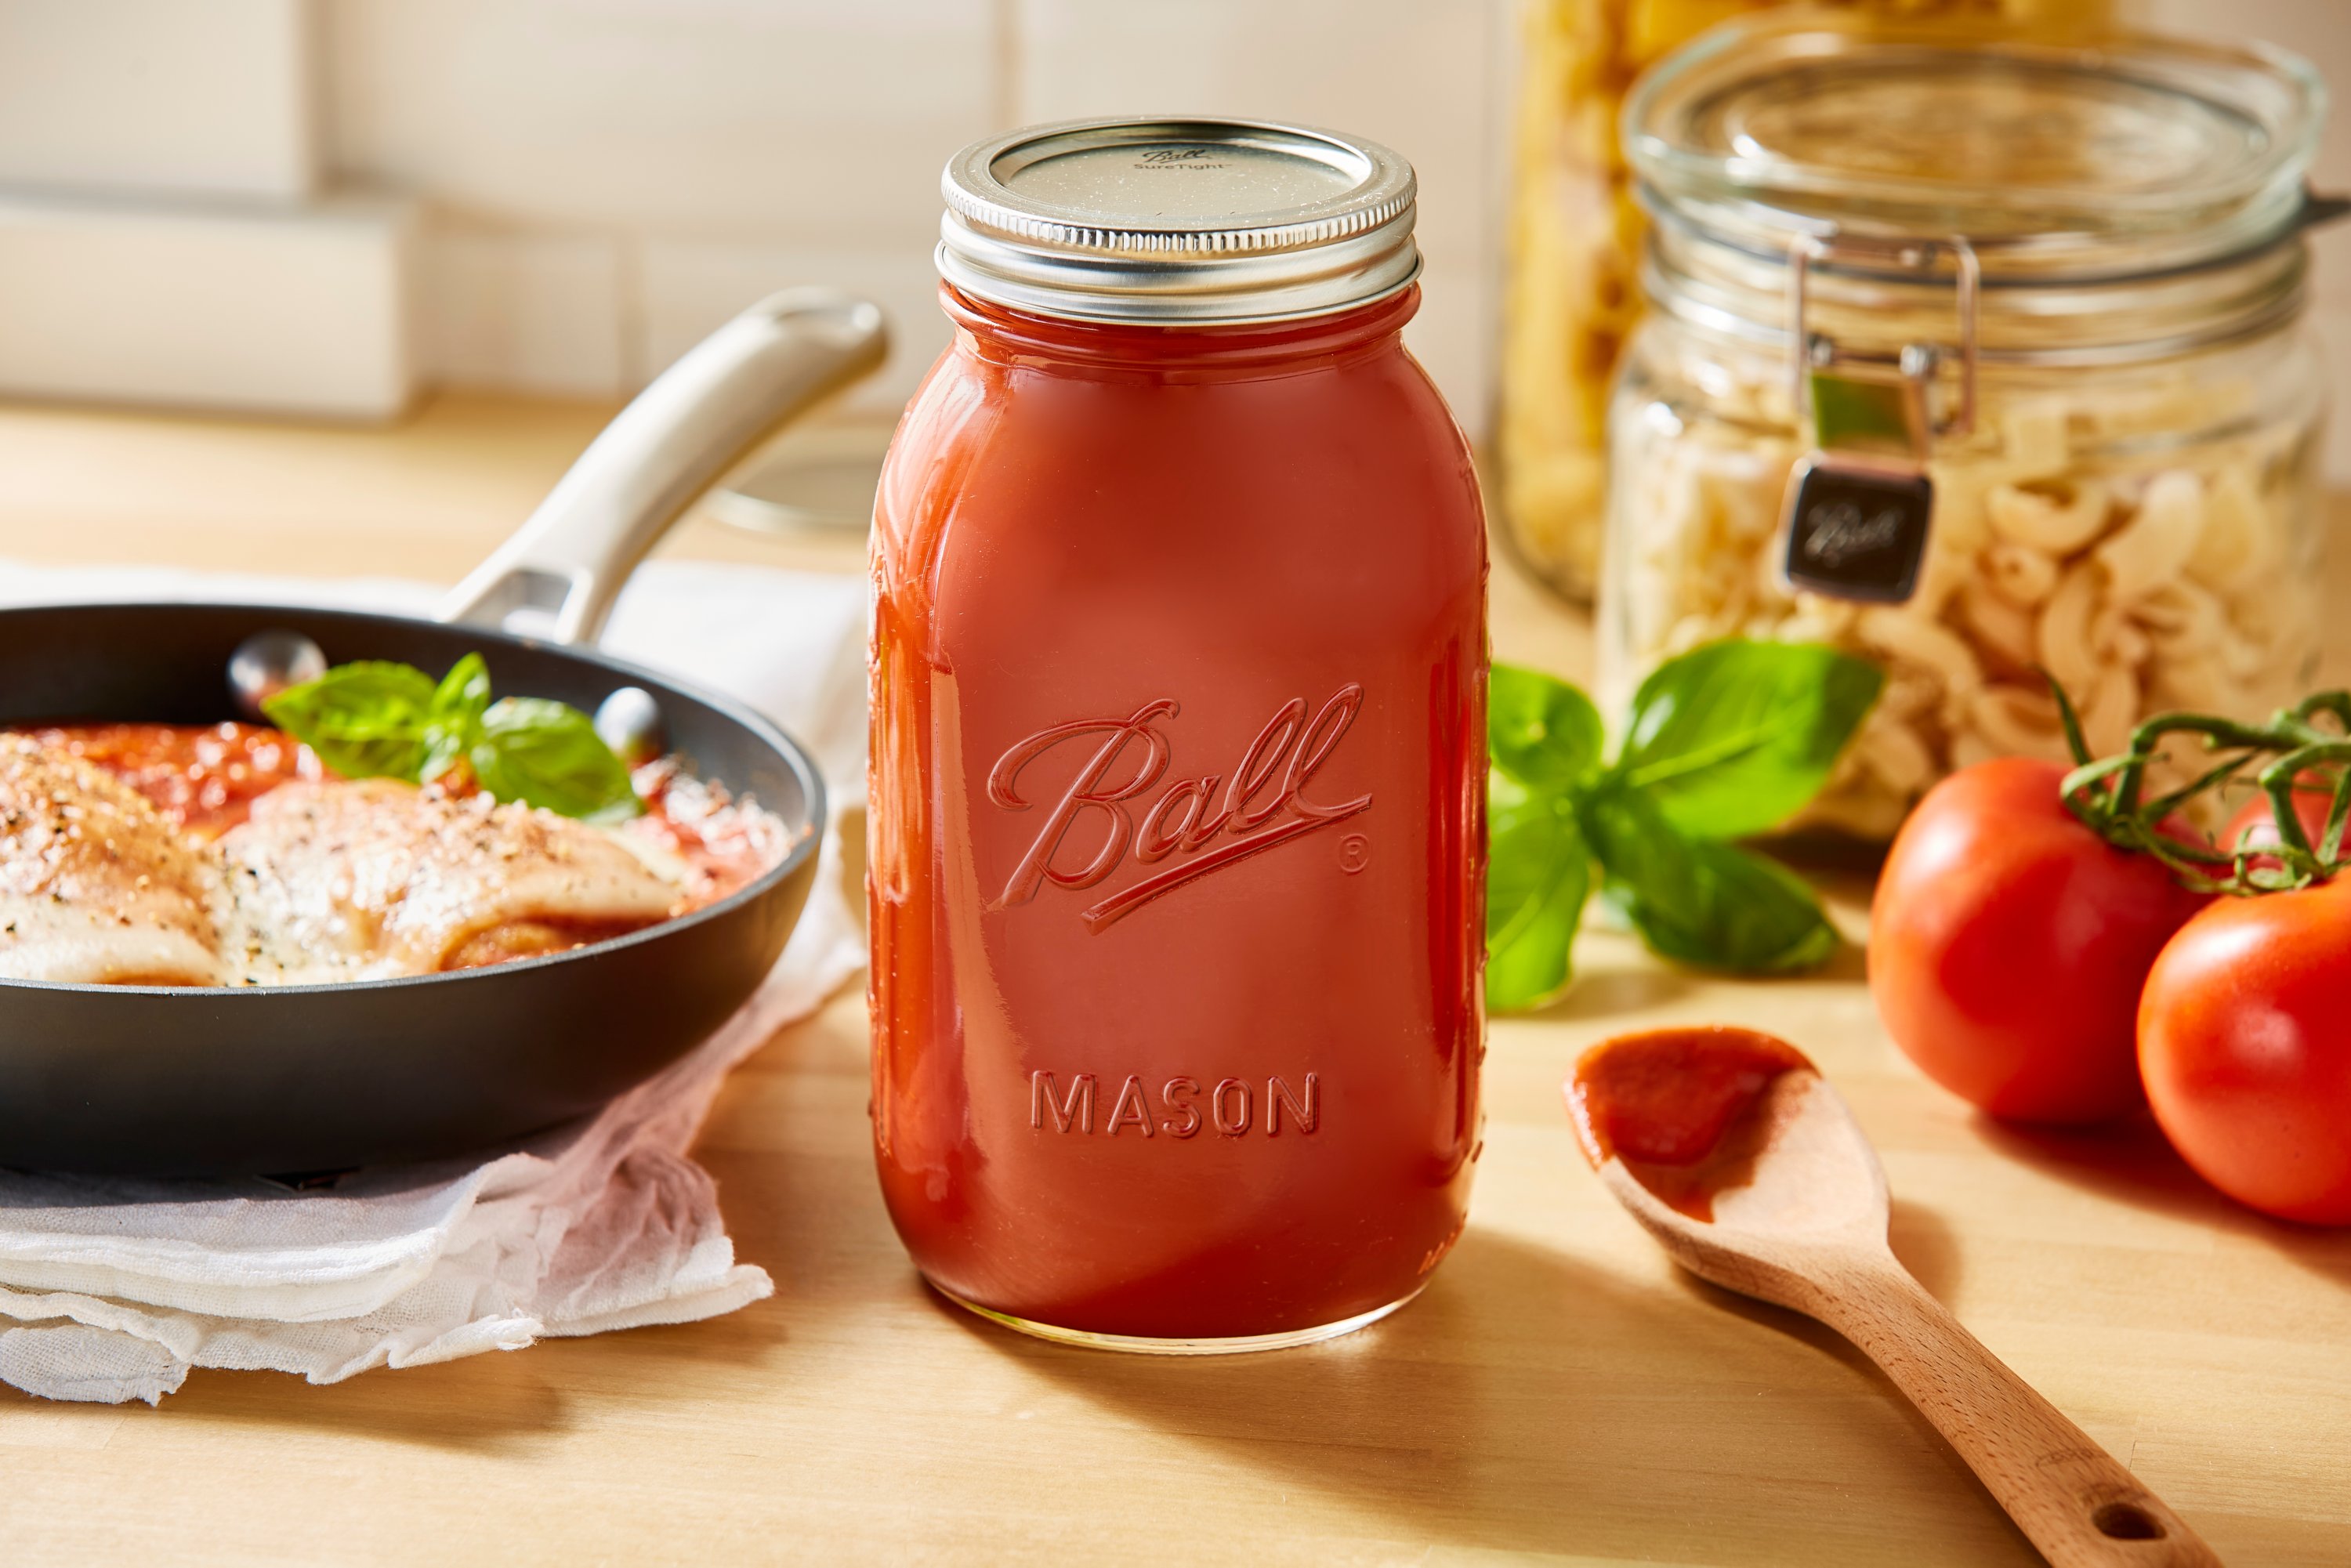 sauce in mason jars on table